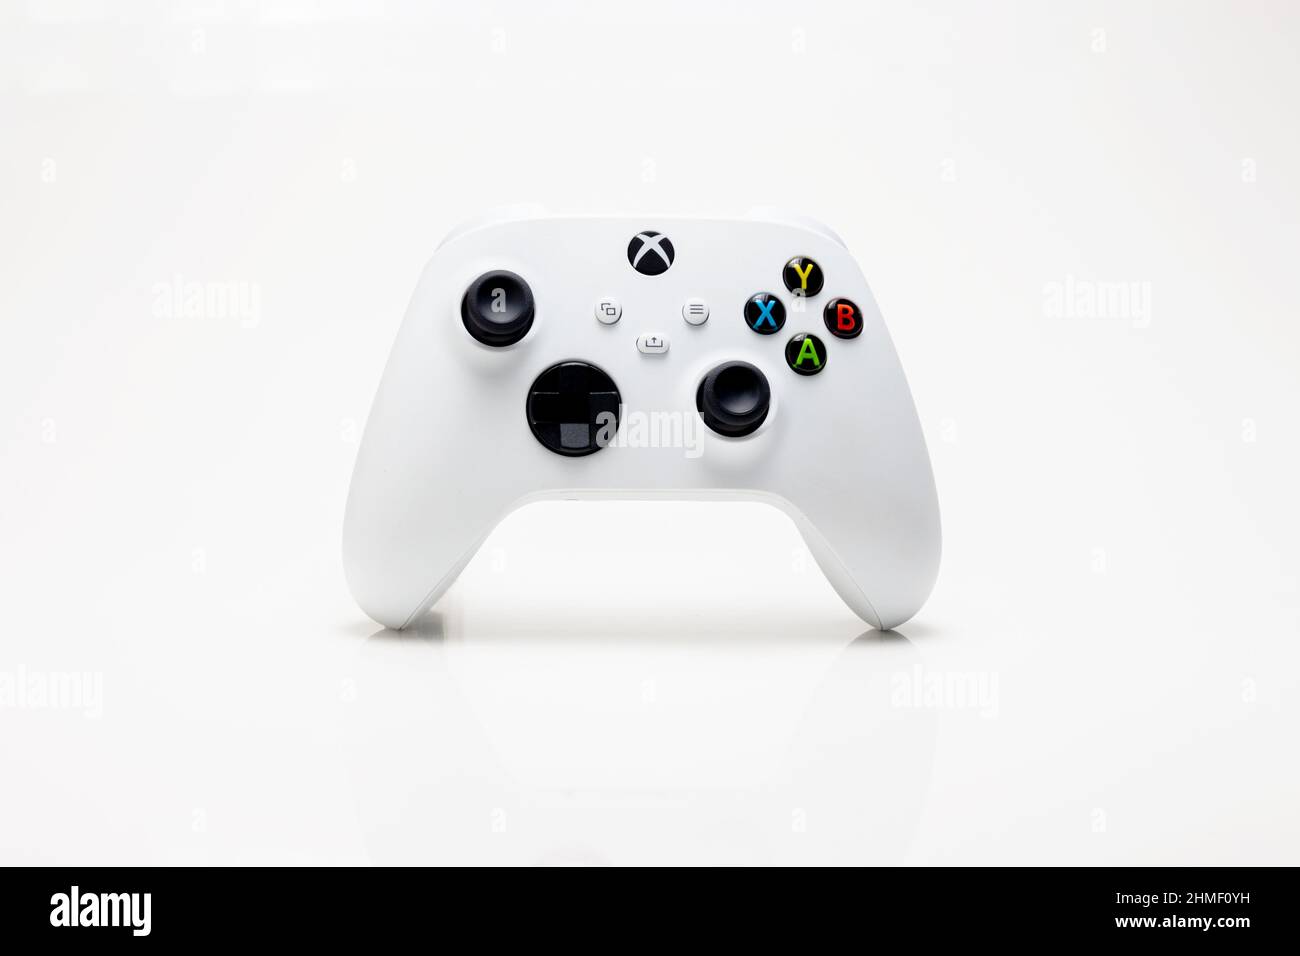 São Luís, Maranhão, Brasil - 29 de junio de 2021: Xbox Serie S de color blanco gamepad. Fondo blanco. Foto de stock